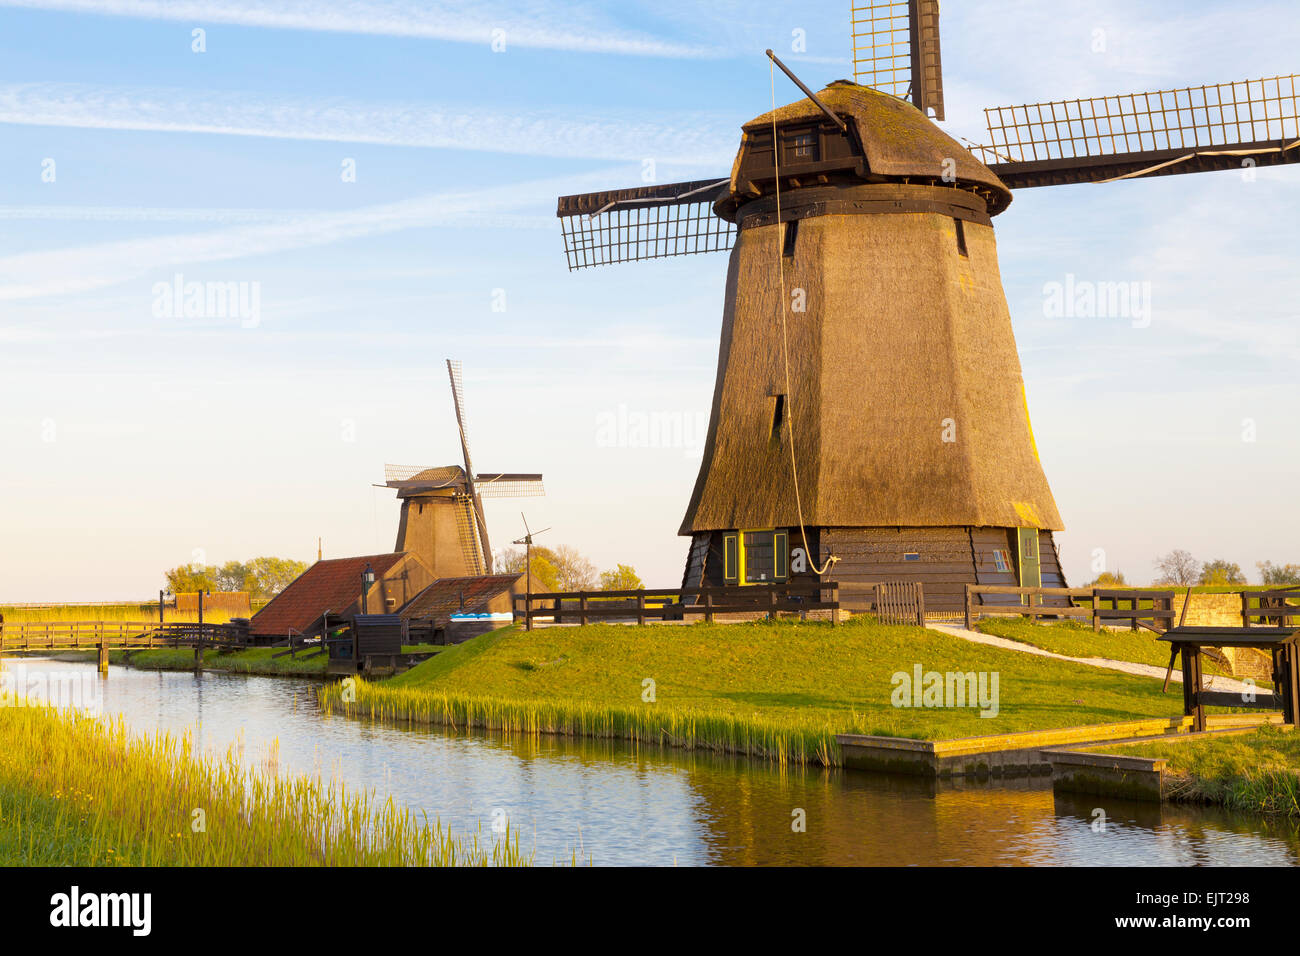 Traditionellen Windmühlen neben einem Kanal, Schermerhorn, Nordholland, Niederlande Stockfoto